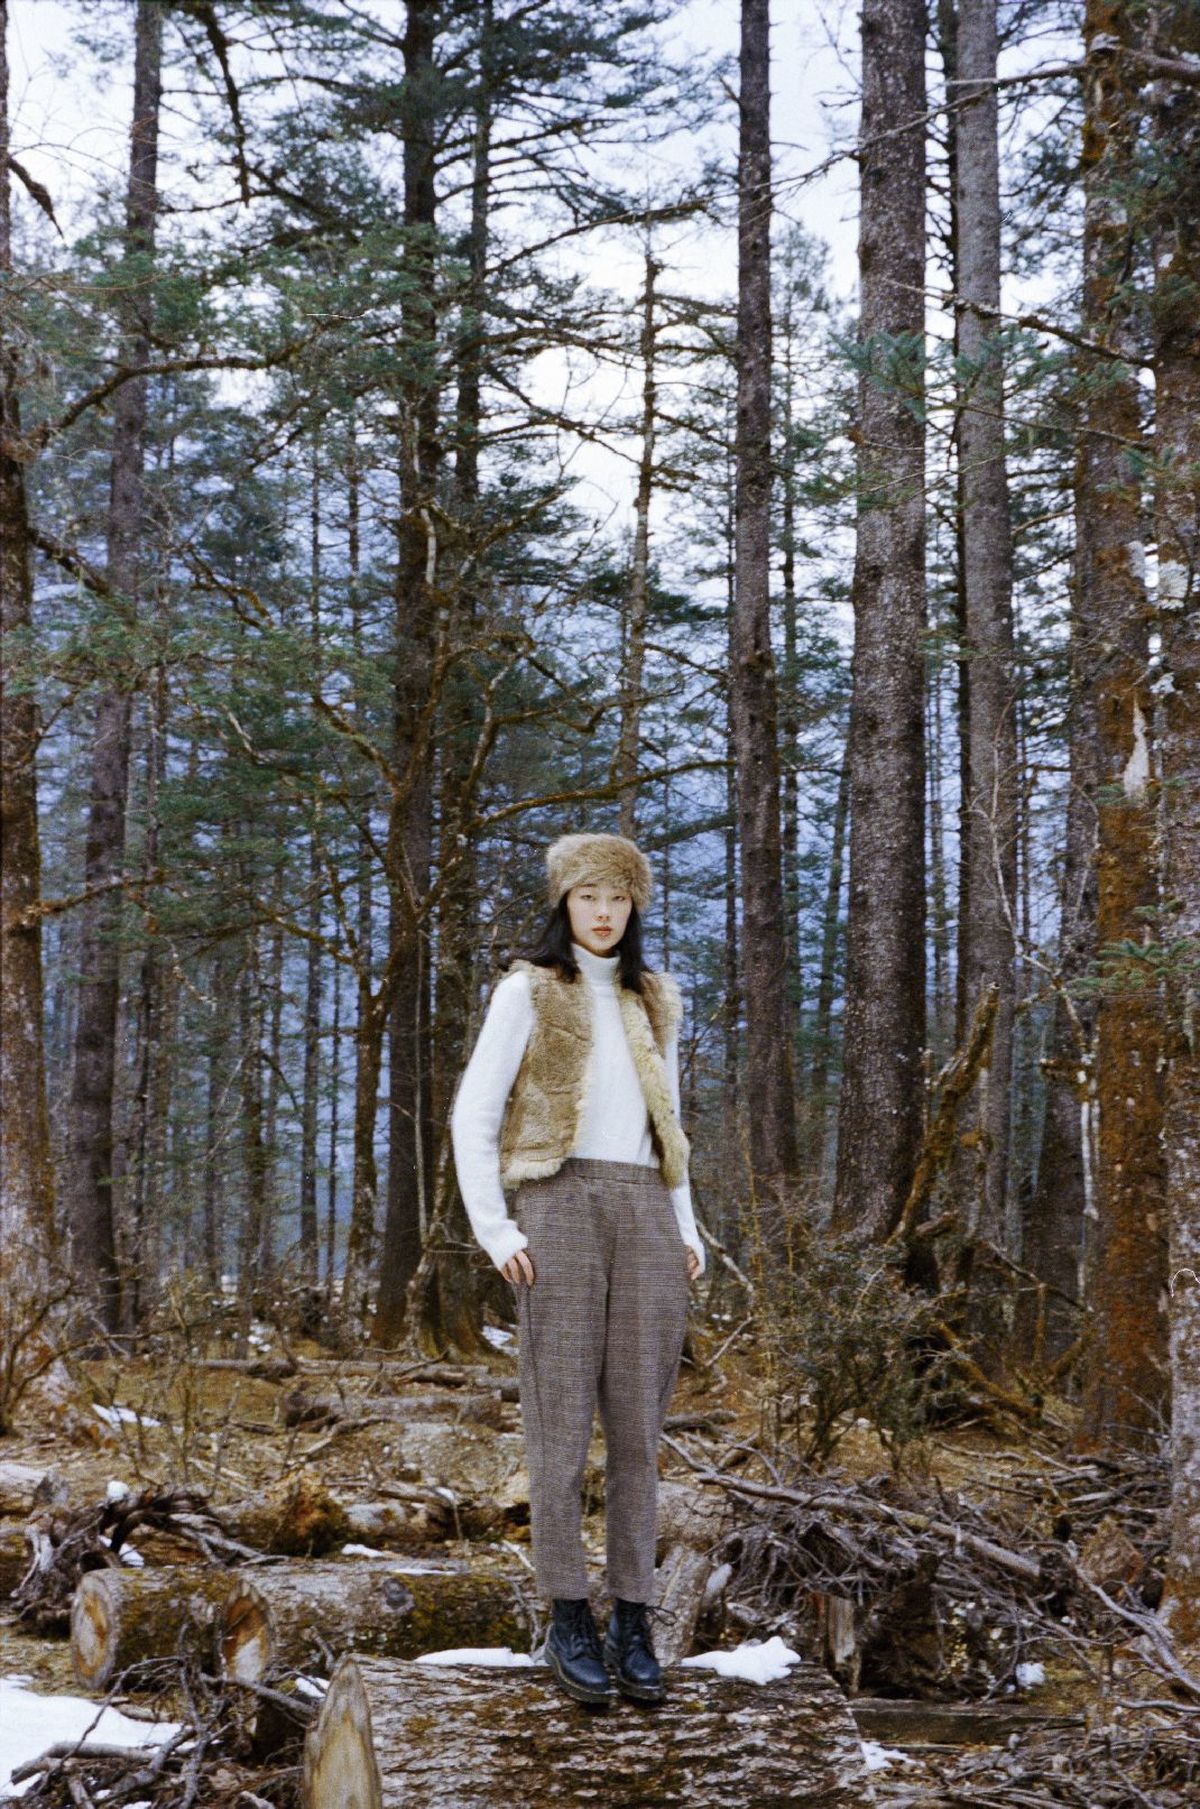 戴帽子的人在森林中 地上有雪 树上有雪。